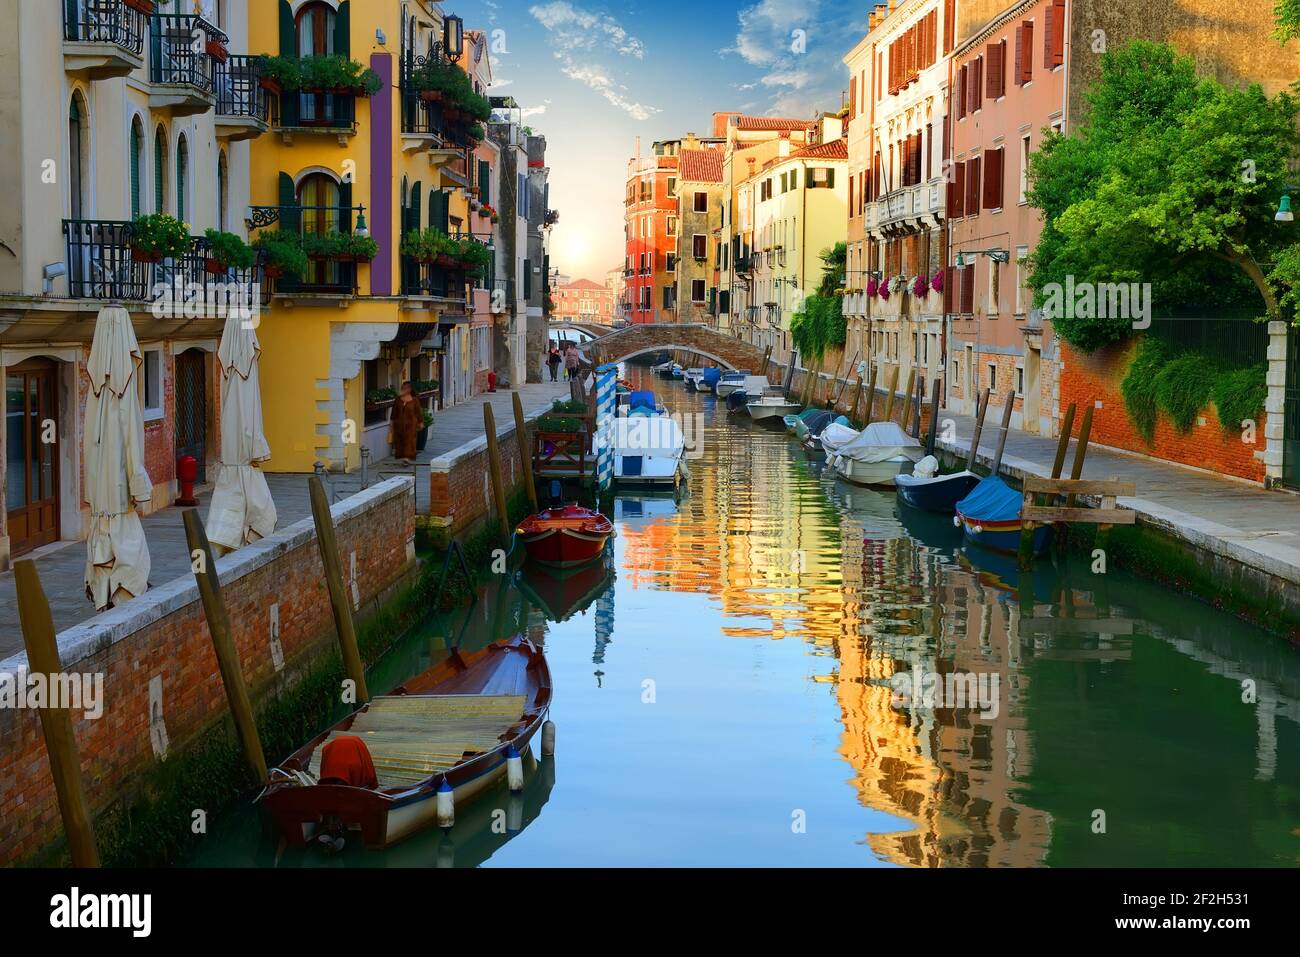 Boats in narrow venetian water canal, Italy Stock Photo